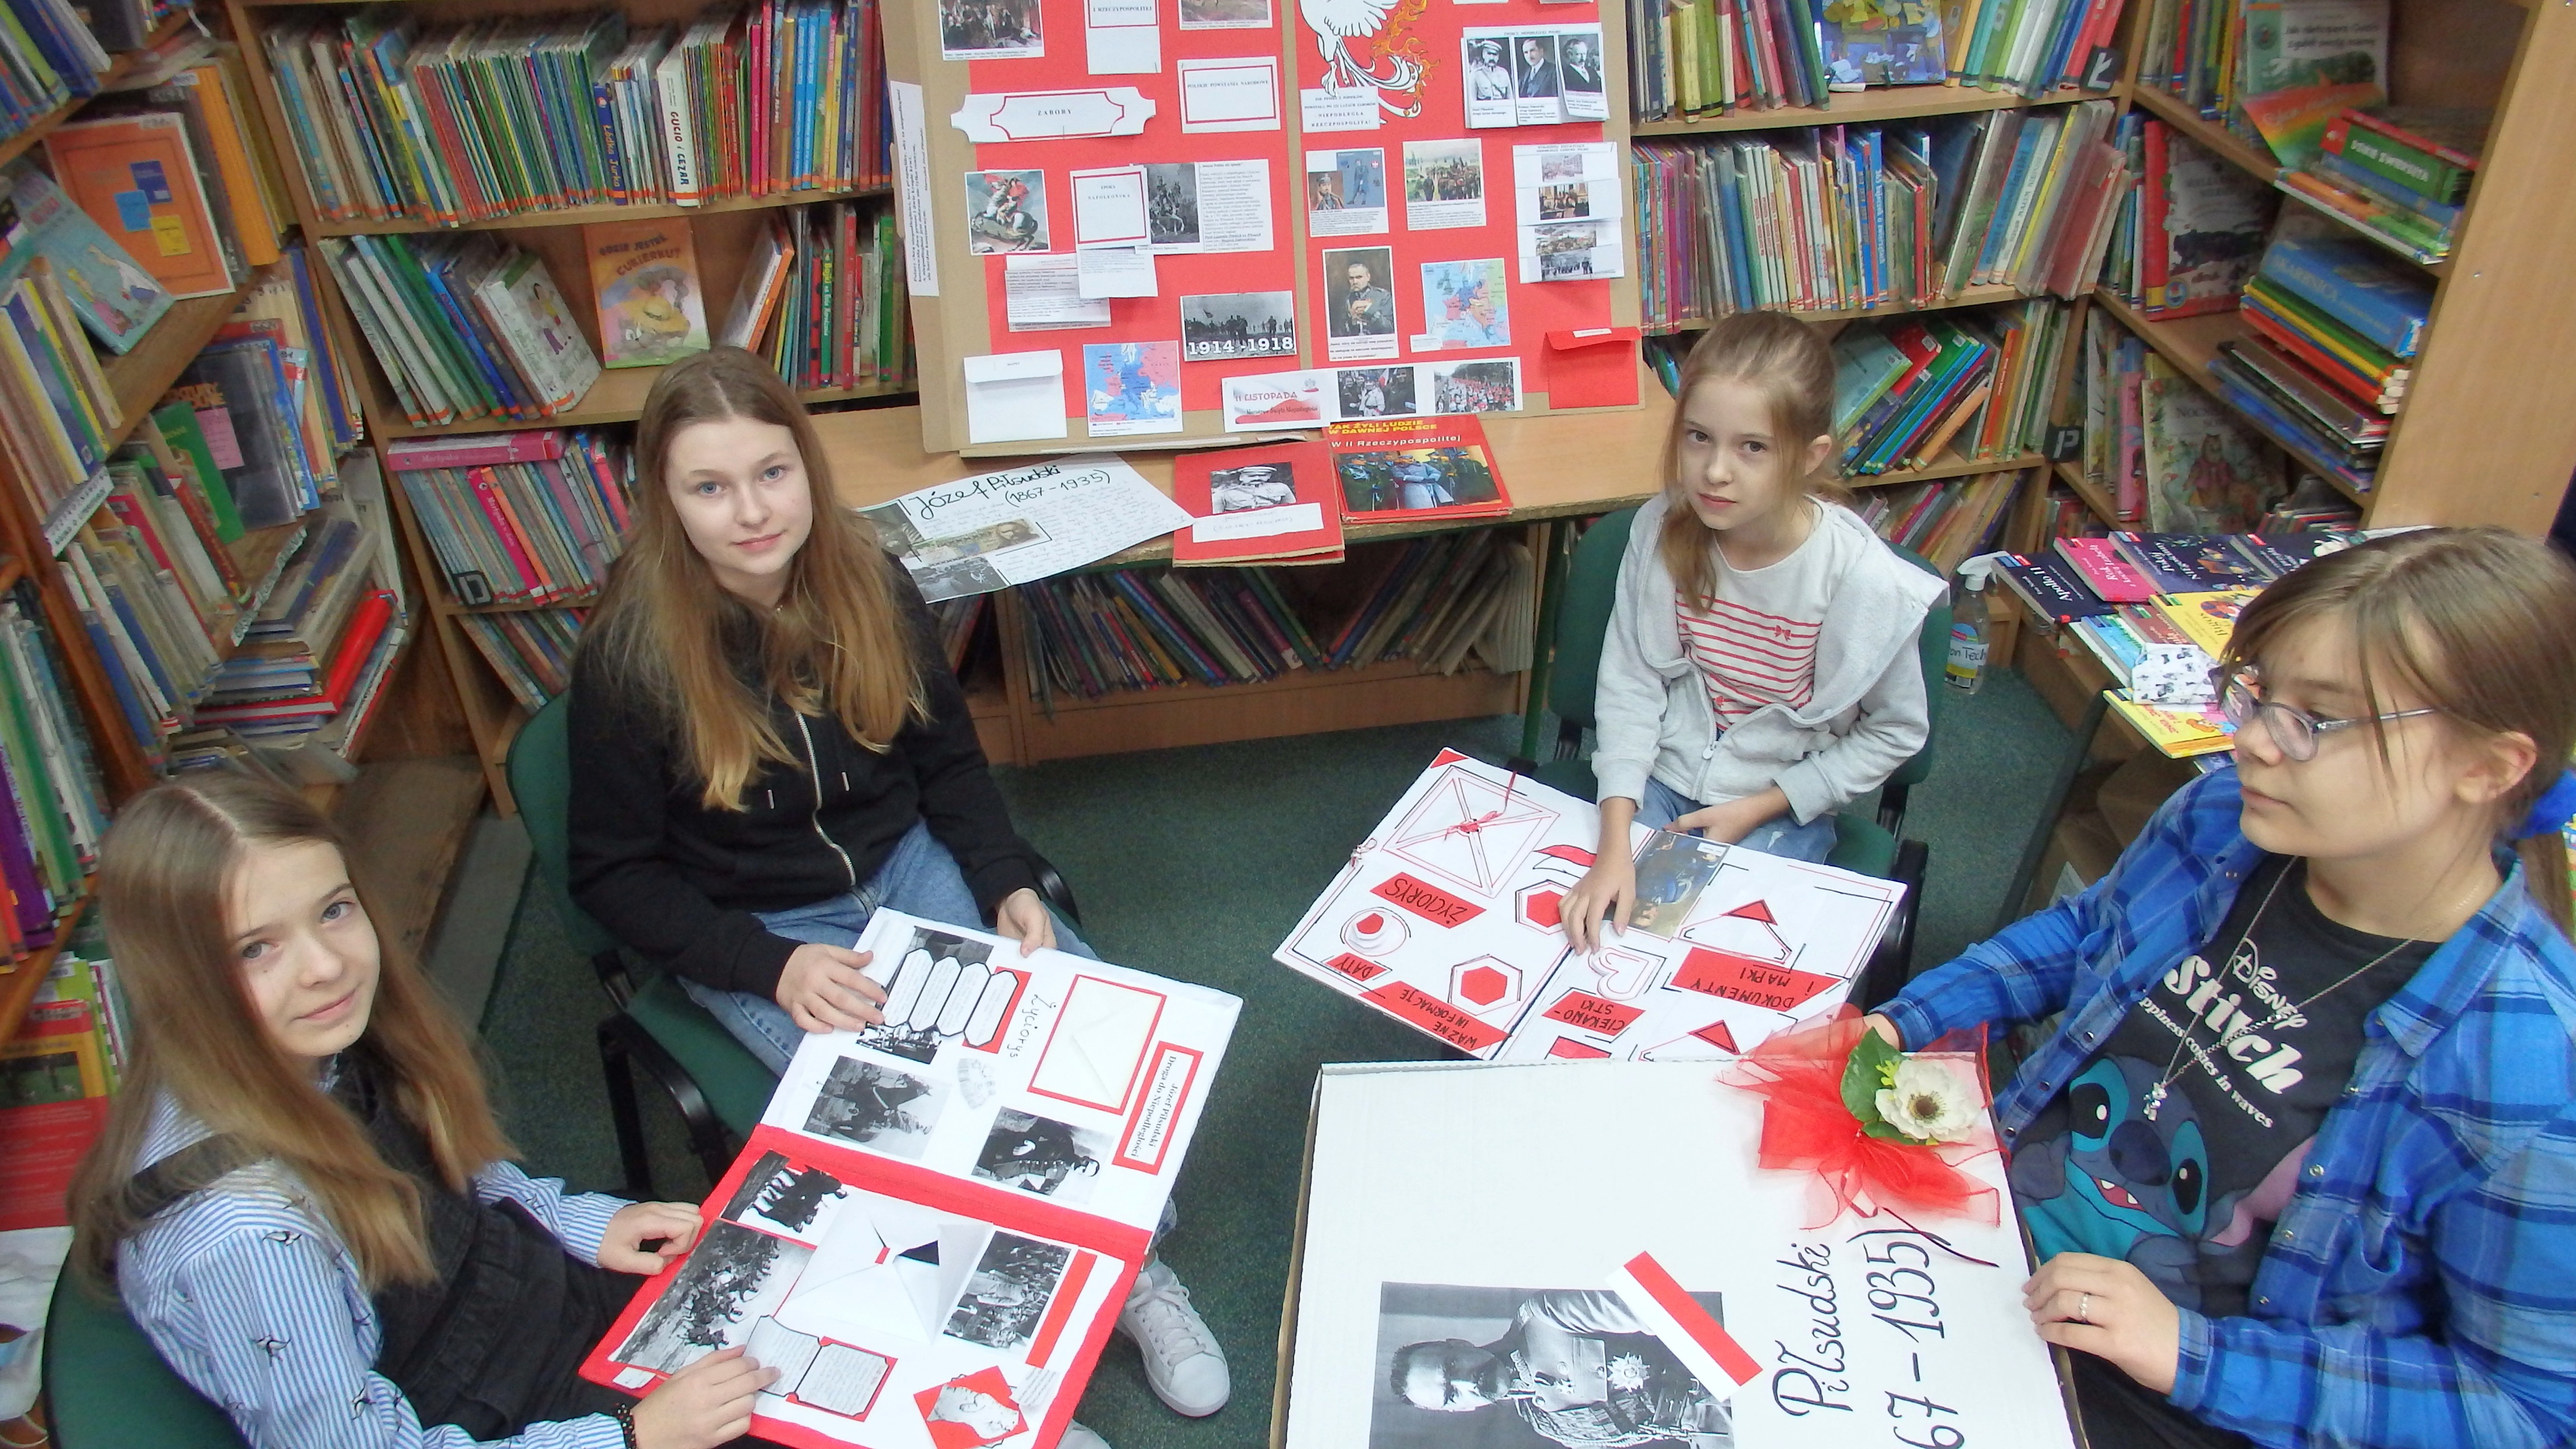 W bibliotece 4 uczennice z klasy VII c prezentują wykonane przez siebie Lapbooki czyli książki wykonane w tonacji biało-czerwonej. Temat : Józef Piłsudski.